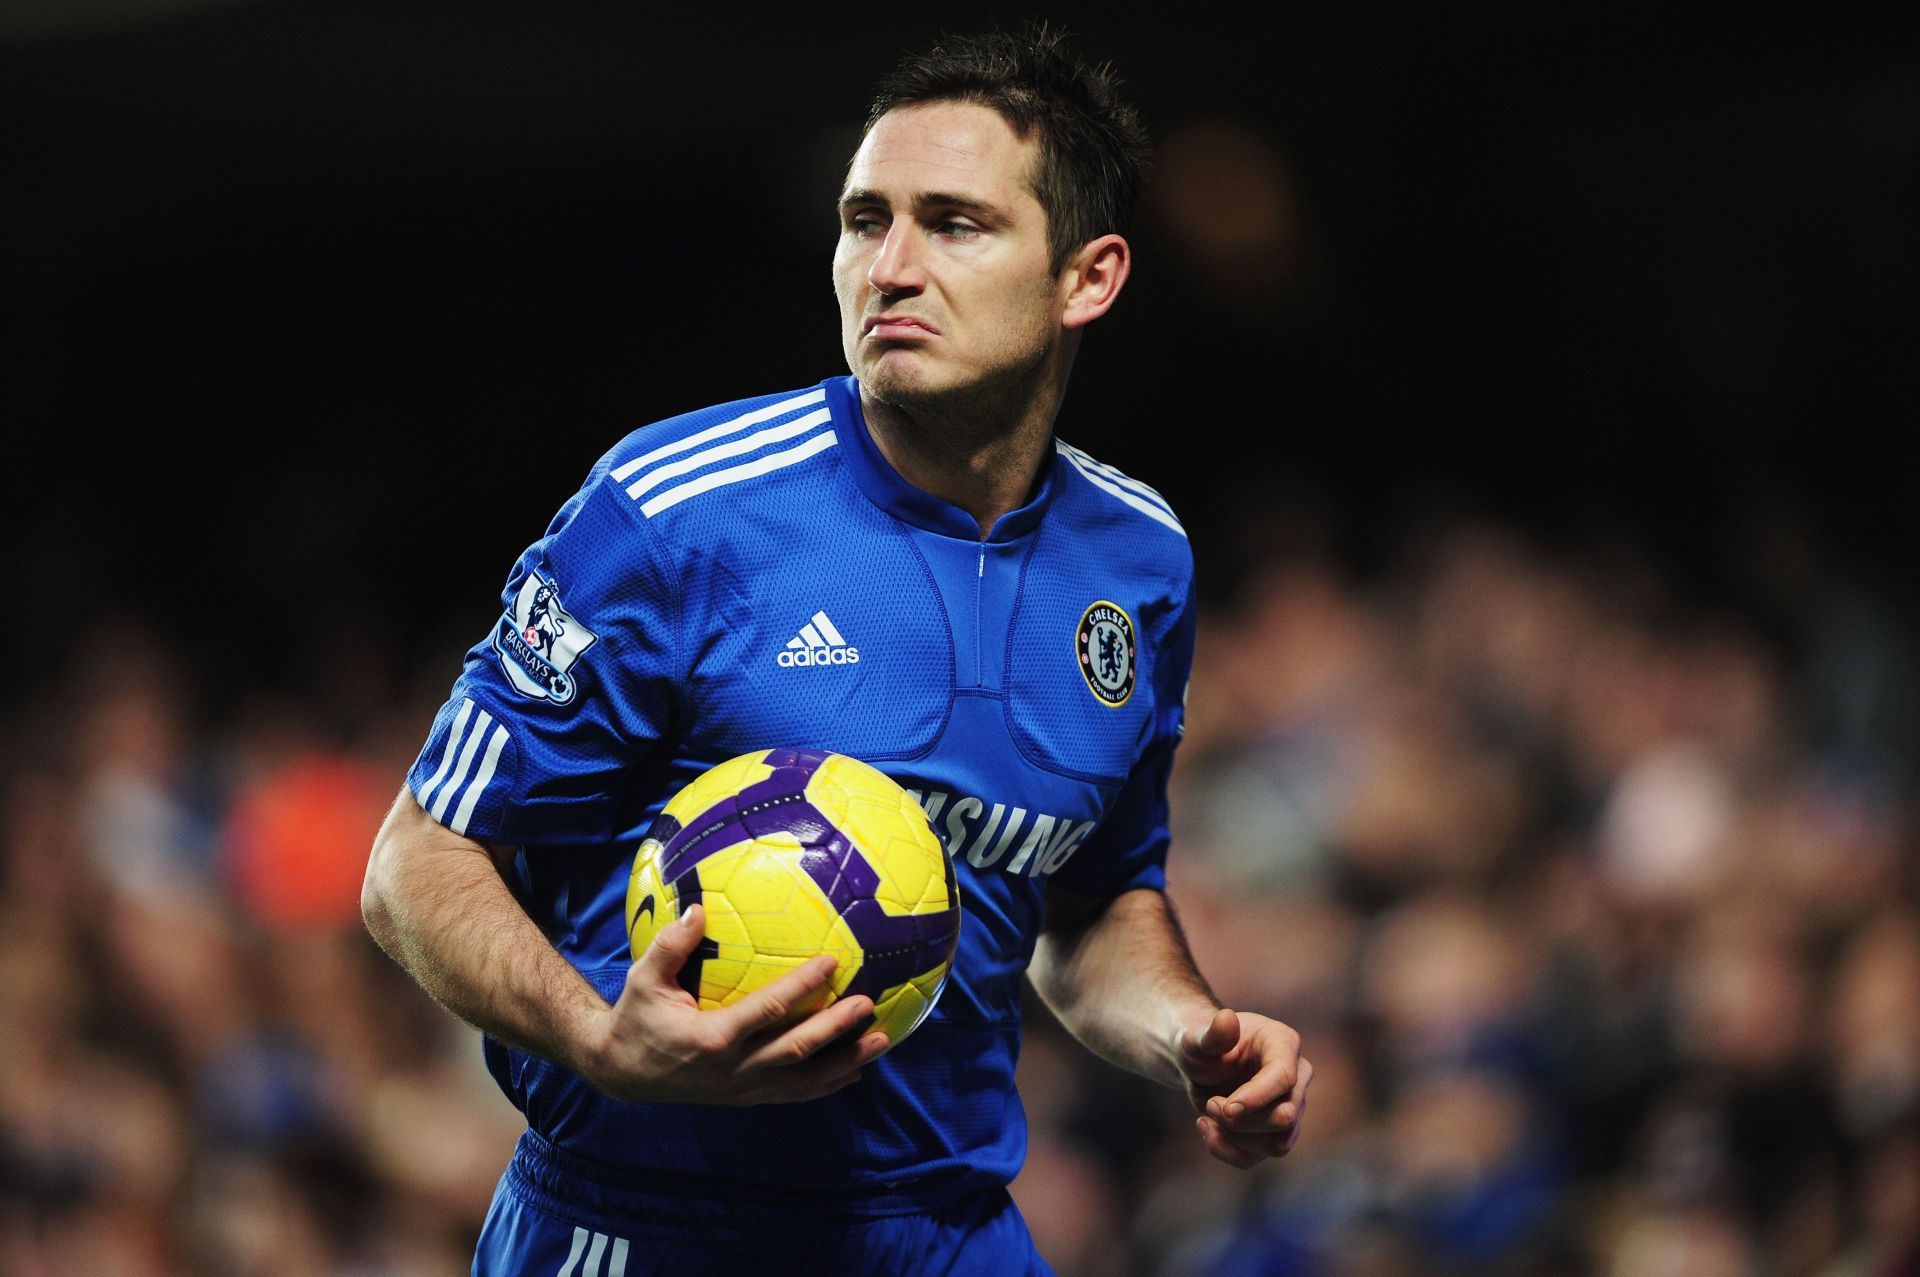 Frank Lampard had a fabulous career.